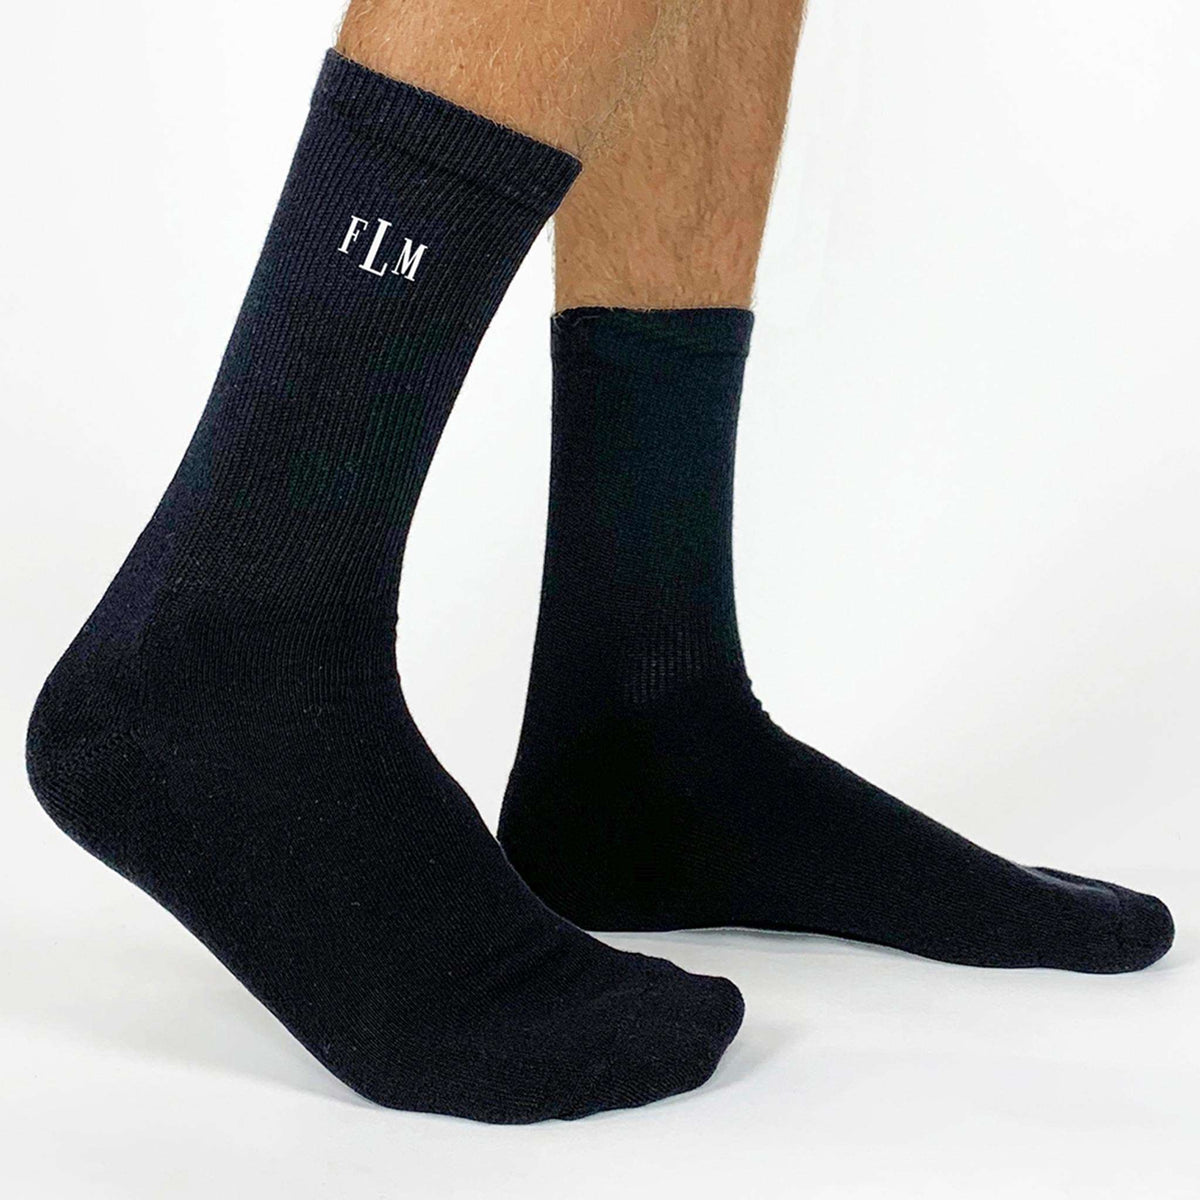 Classic Monogrammed Gift Sock Set for Men - 3 Pair Gift Box – Sockprints